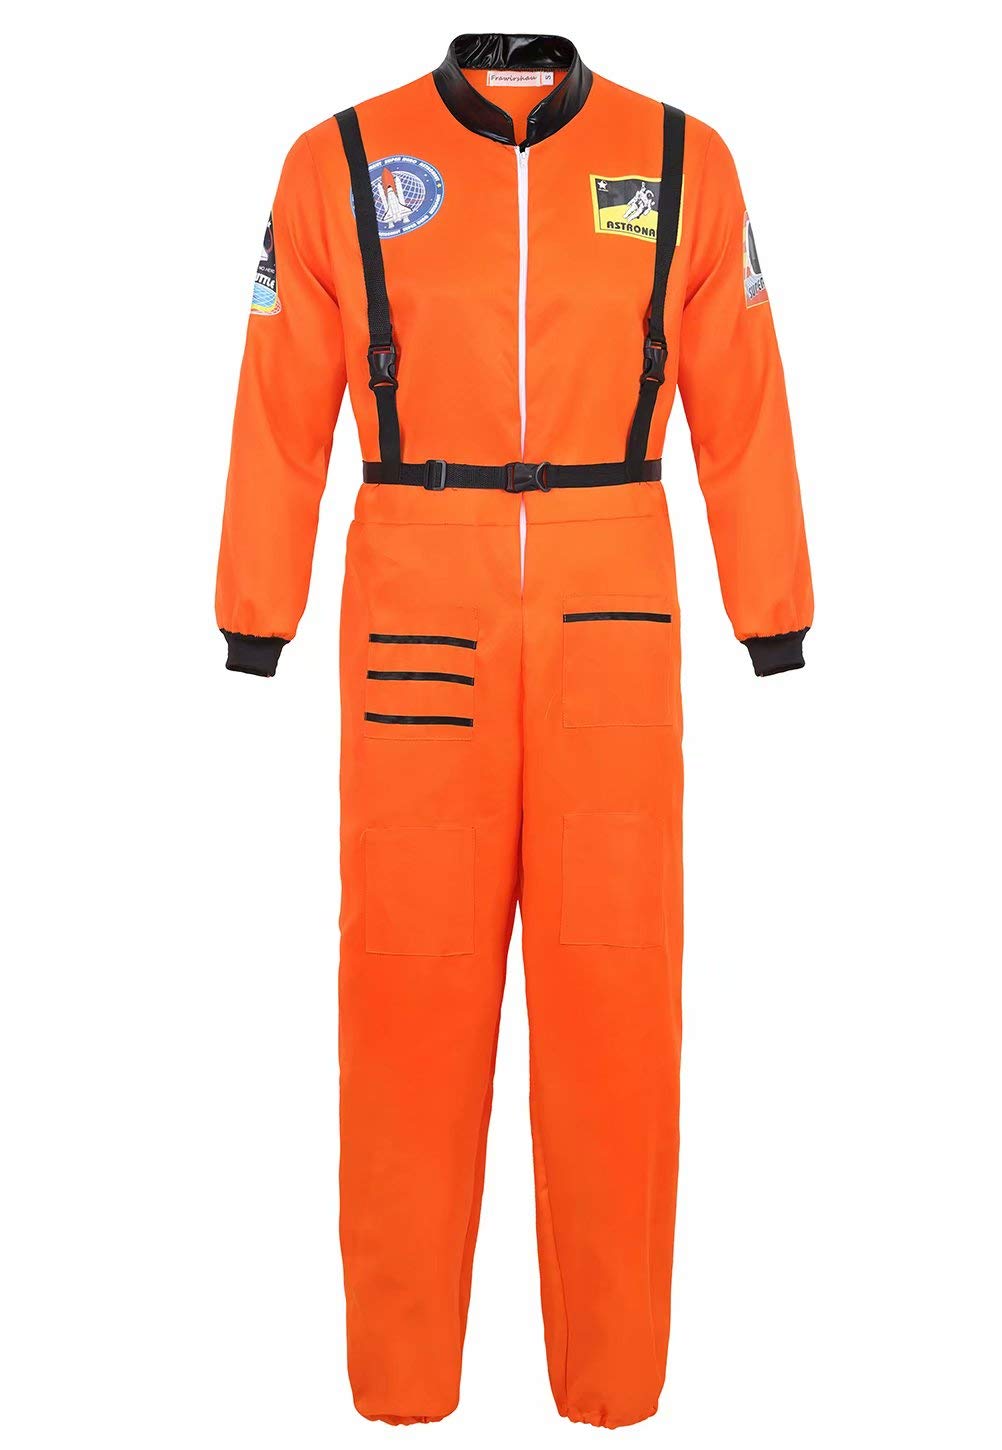 Josamogre Astronauten Kostüm Erwachsene Herren Kostüm Astronau Anzugt Weltraum Raumfahrer Halloween Cosplay Orange xl